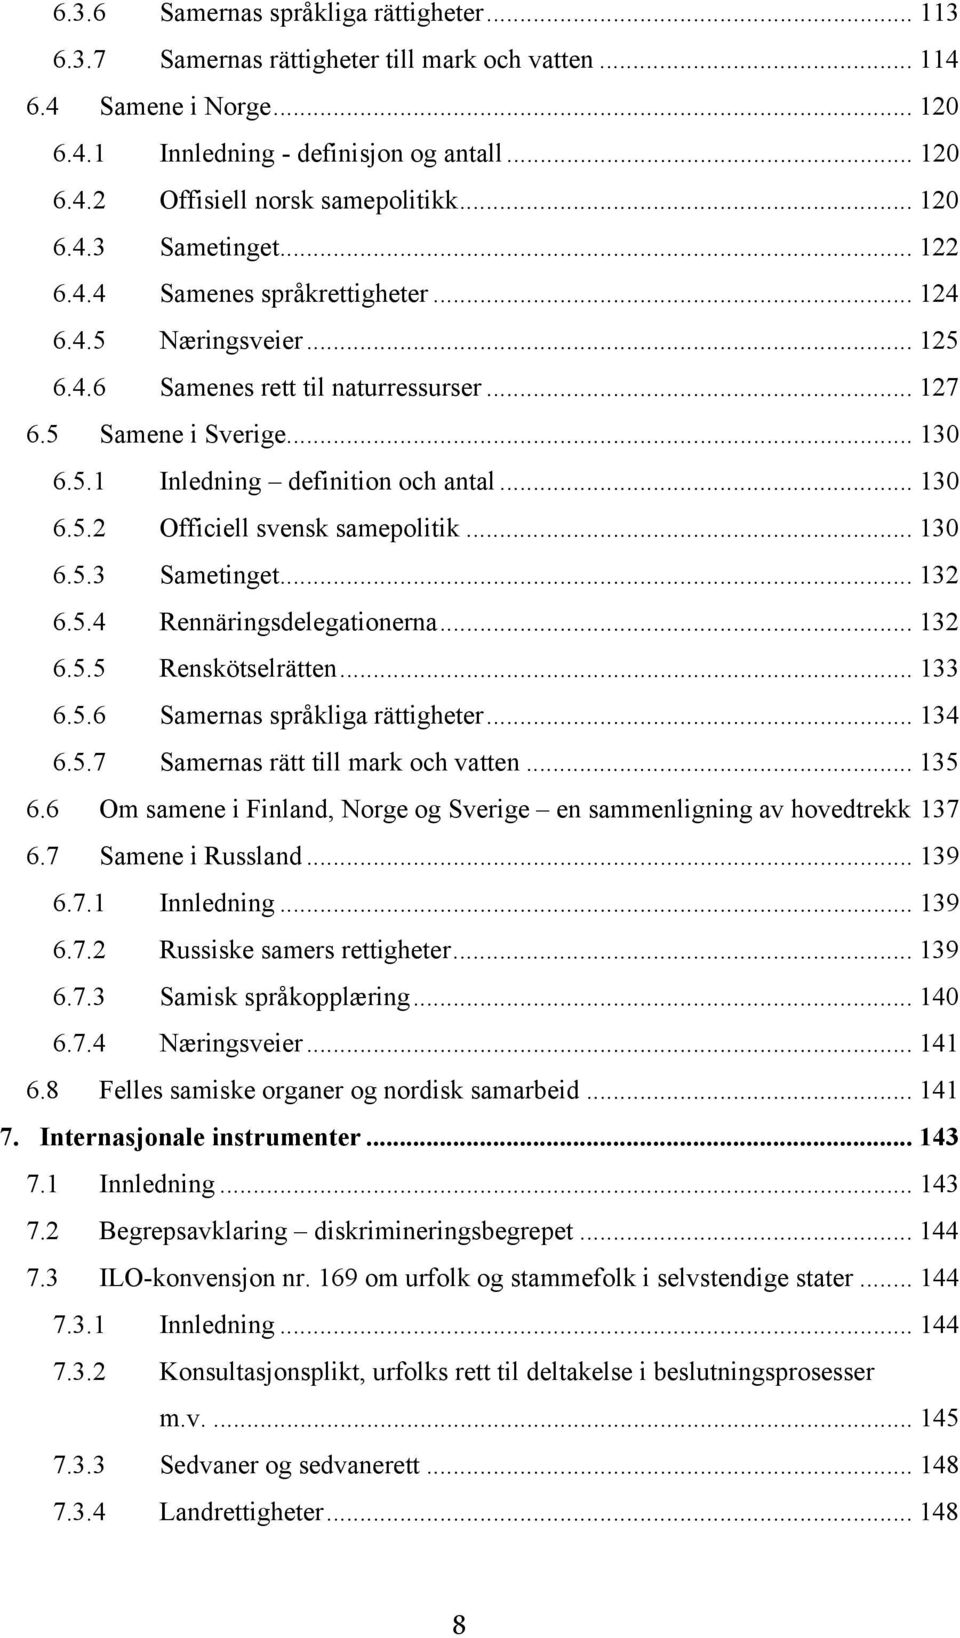 .. 130 6.5.2 Officiell svensk samepolitik... 130 6.5.3 Sametinget... 132 6.5.4 Rennäringsdelegationerna... 132 6.5.5 Renskötselrätten... 133 6.5.6 Samernas språkliga rättigheter... 134 6.5.7 Samernas rätt till mark och vatten.